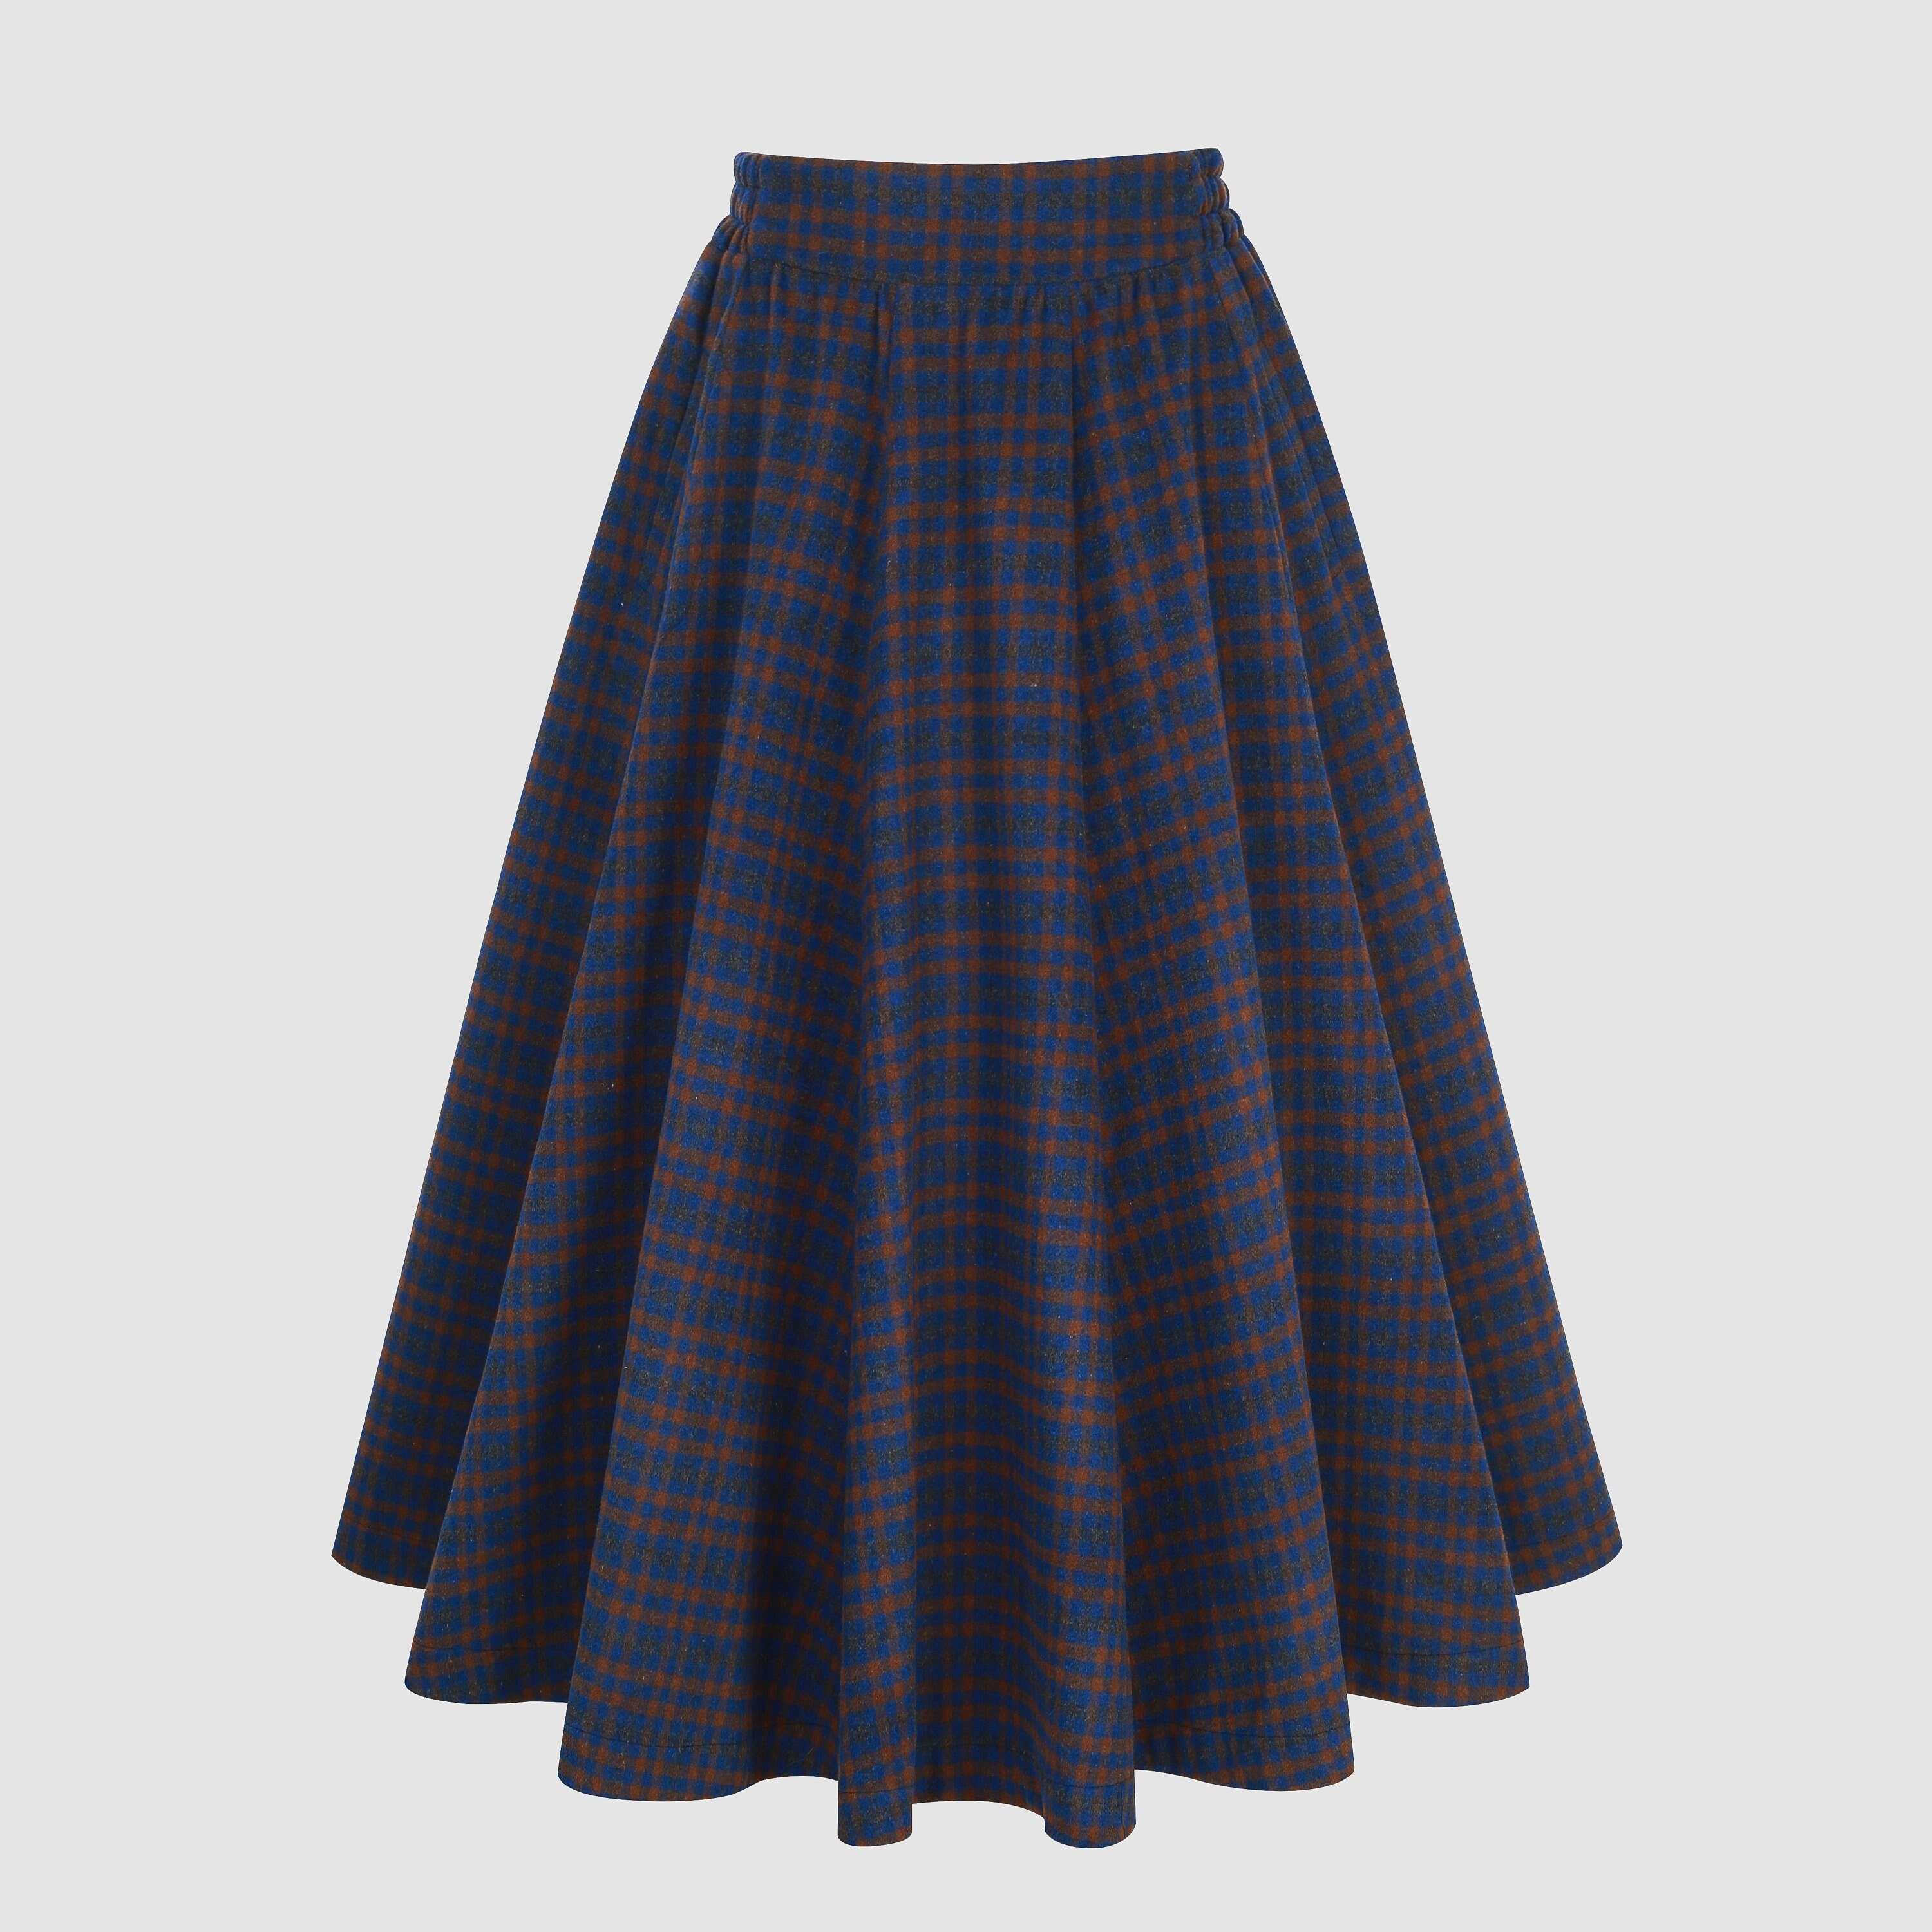 Tartan Wool Skirt in Blue Midi Wool Skirt Vintage Wool Plaid picture